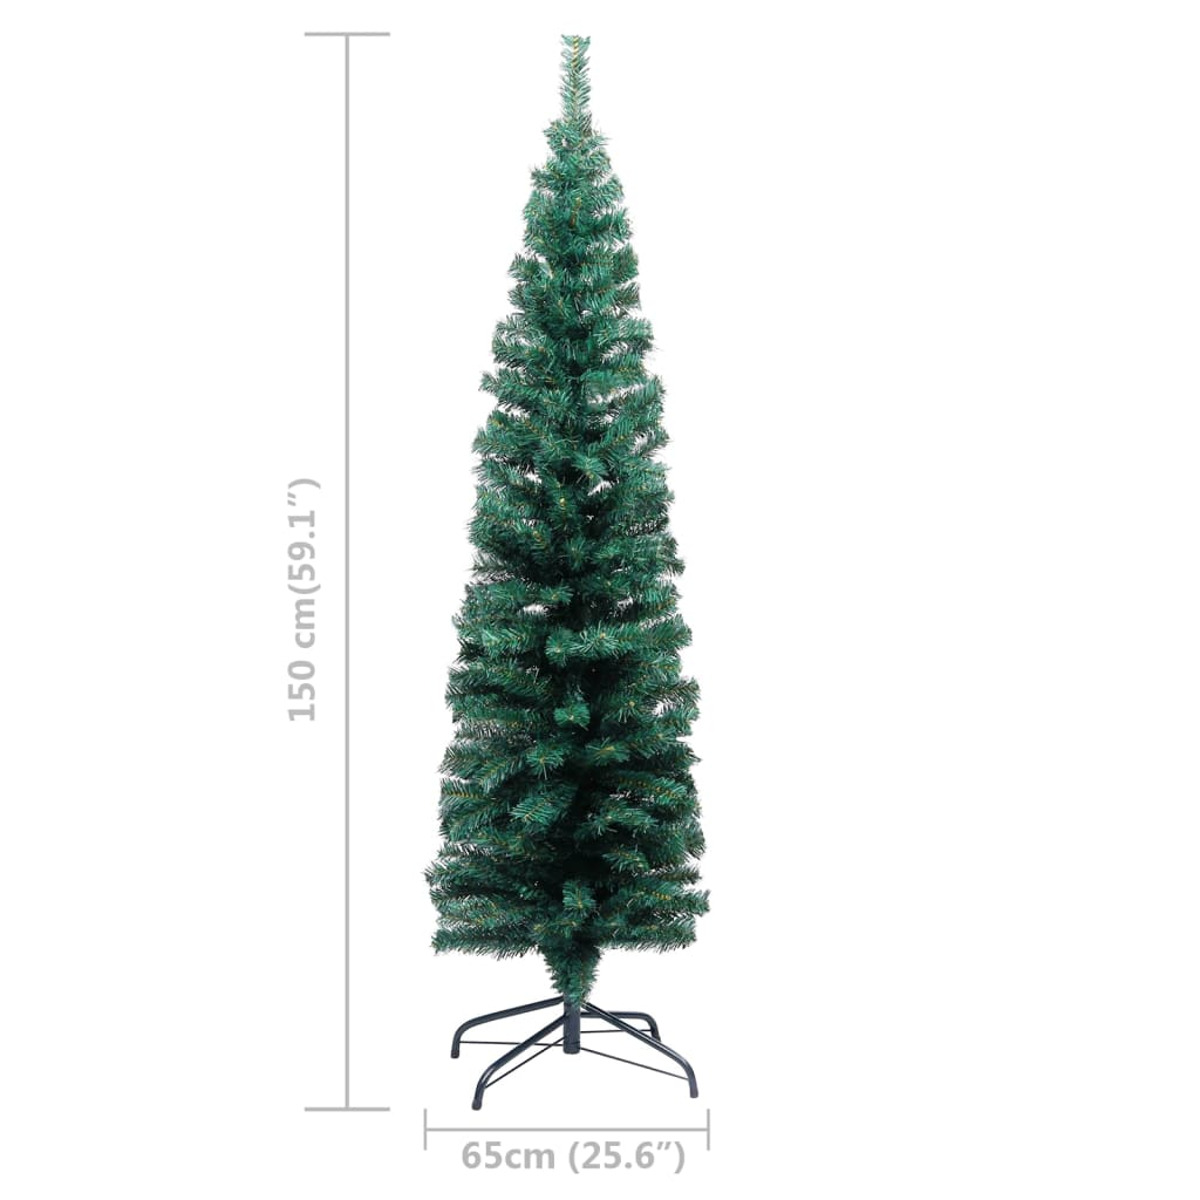 VIDAXL 3077899 Weihnachtsbaum